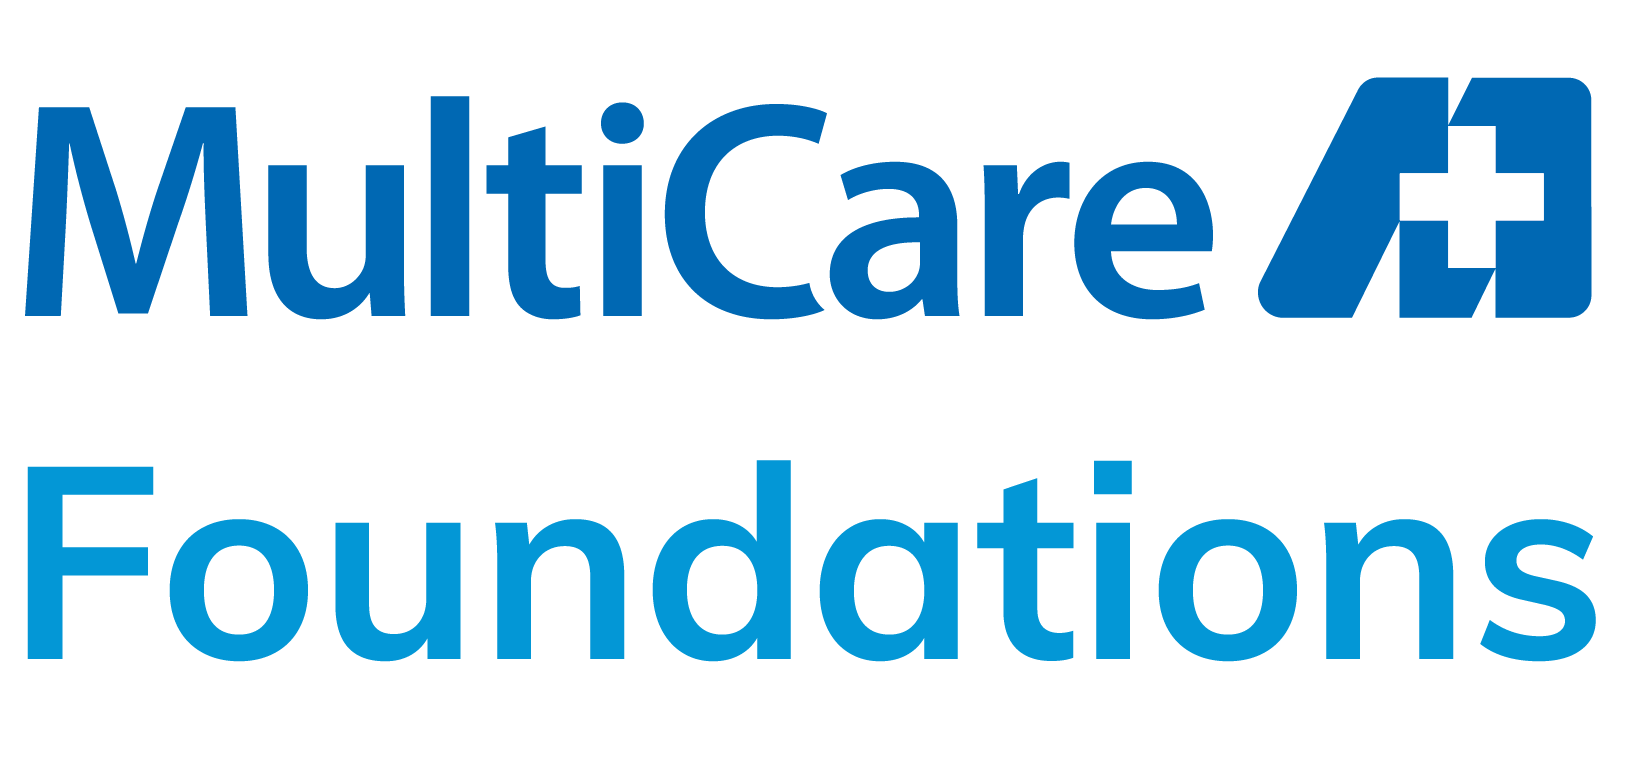 Multicare Foundation